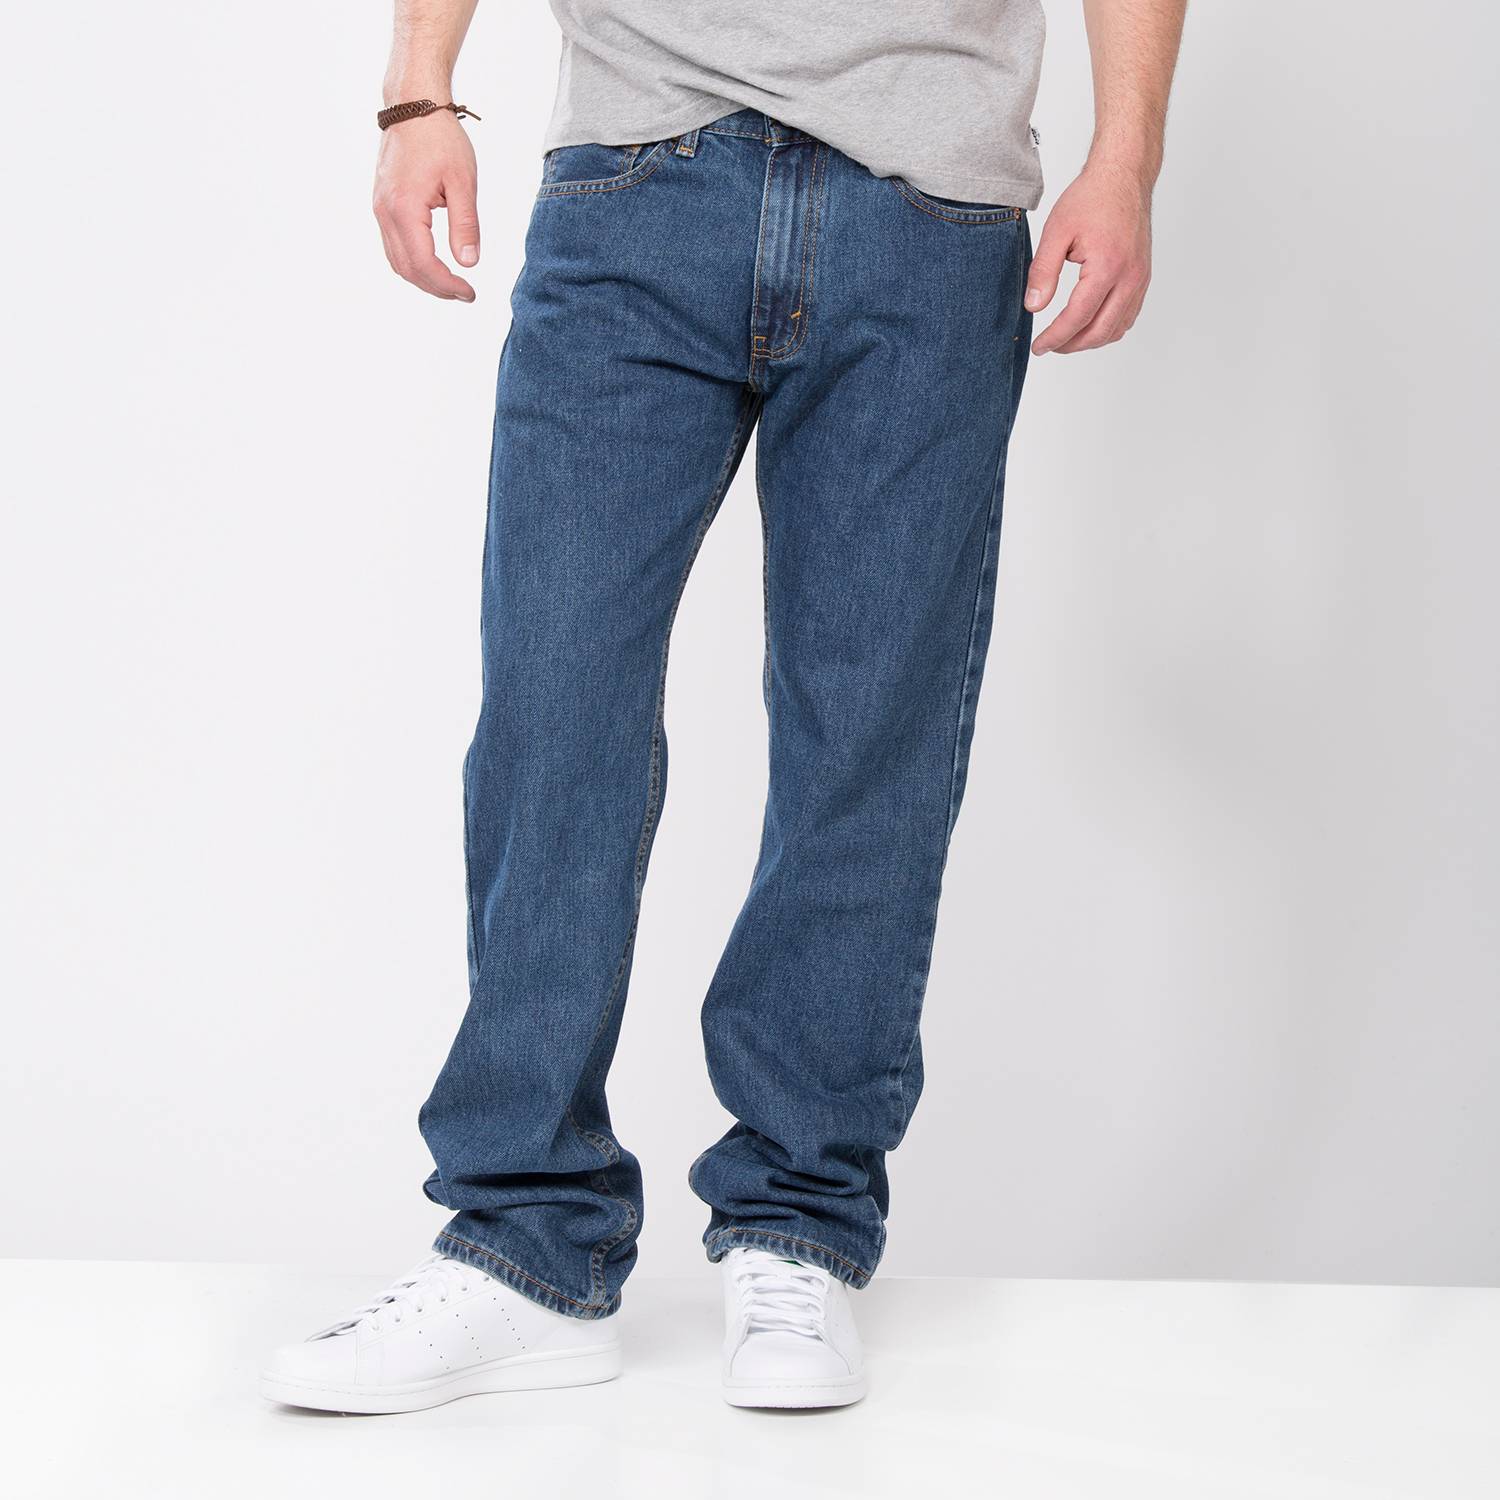 Levis Jeans Regular Fit Algodón Hombre | falabella.com